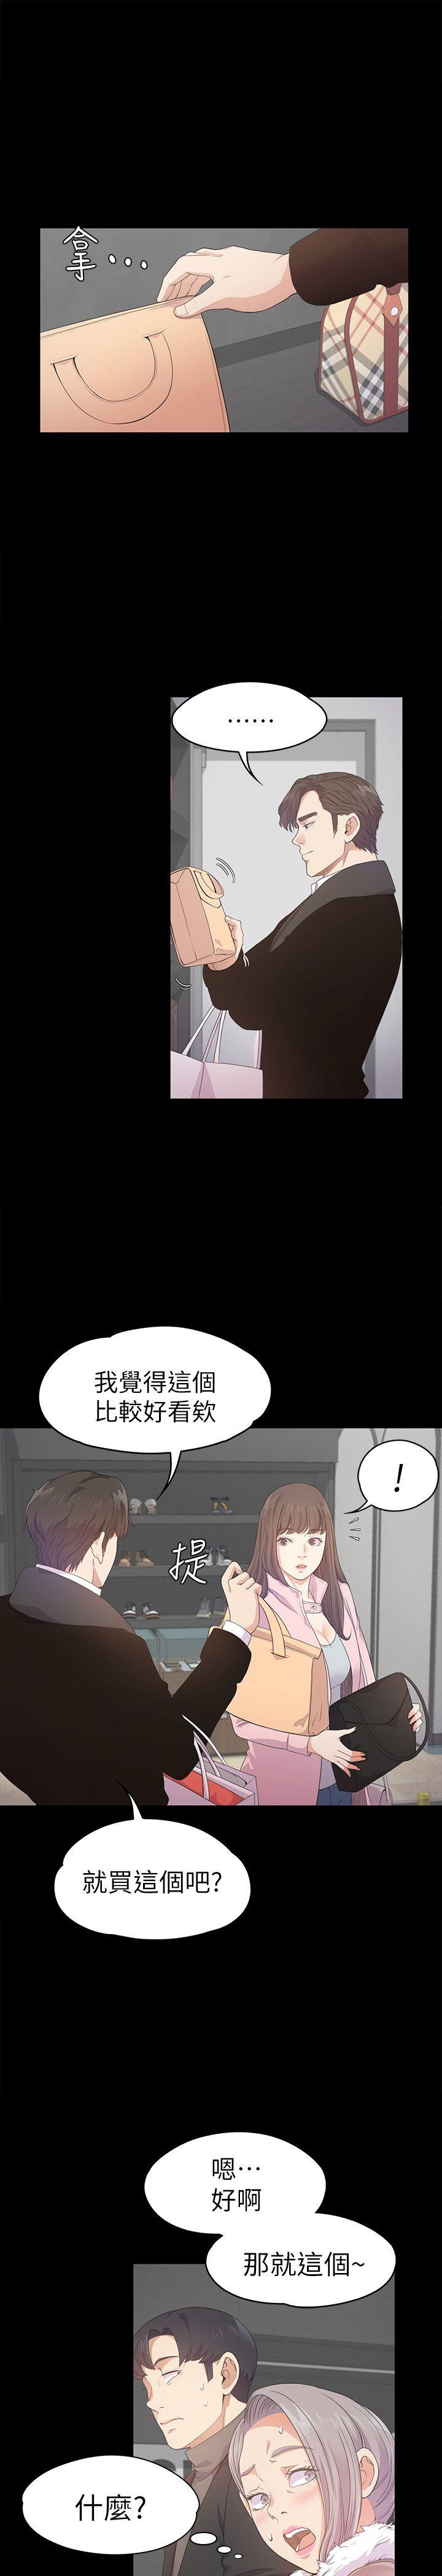 《爱上酒店妹(江南罗曼史)》漫画 第30话-罗曼史开始[01]